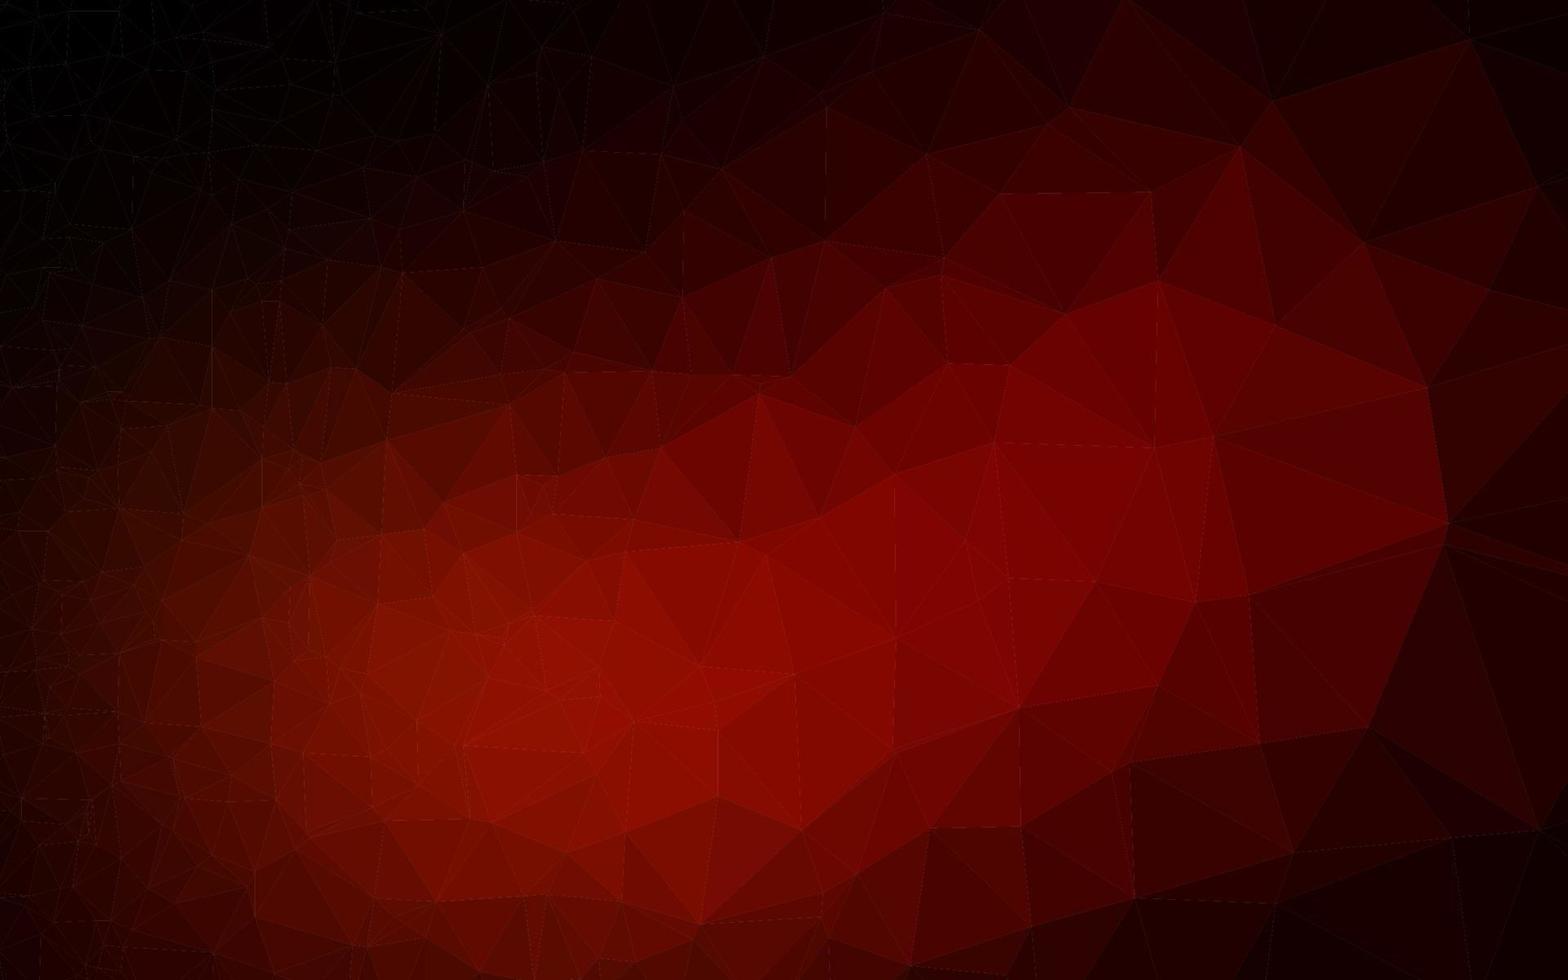 vetor vermelho escuro brilhando modelo triangular.